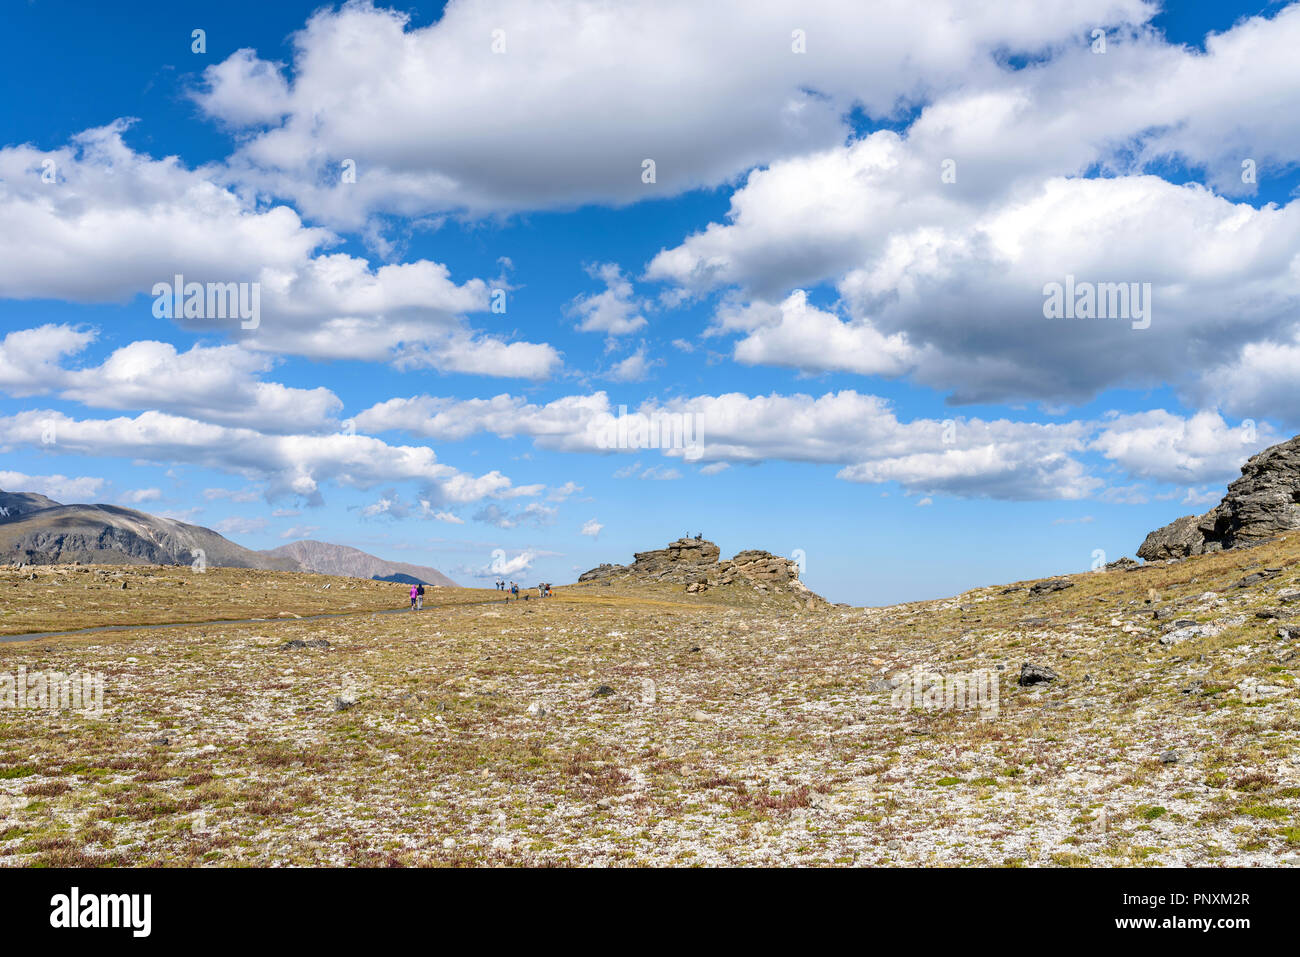 Camminando sulla Tundra - Summer View di turisti a piedi su un sentiero che attraversa la tundra alpina nei pressi di Trail Ridge Road alla sommità del Parco Nazionale delle Montagne Rocciose, CO Foto Stock